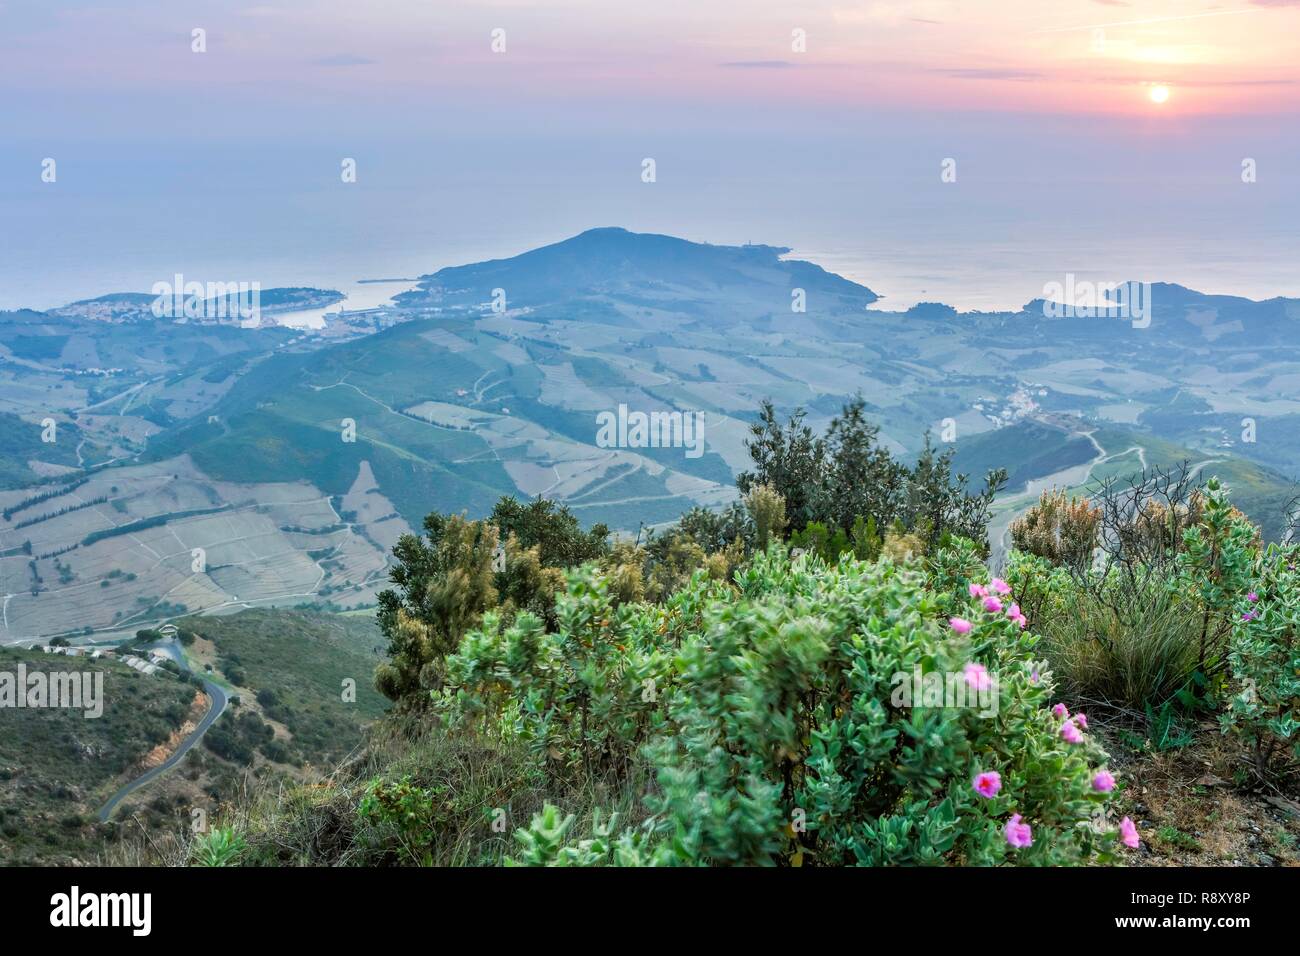 France, Pyrénées Orientales, Banyuls, La Montagne des Albères, sommaire du site au lever du soleil Banque D'Images